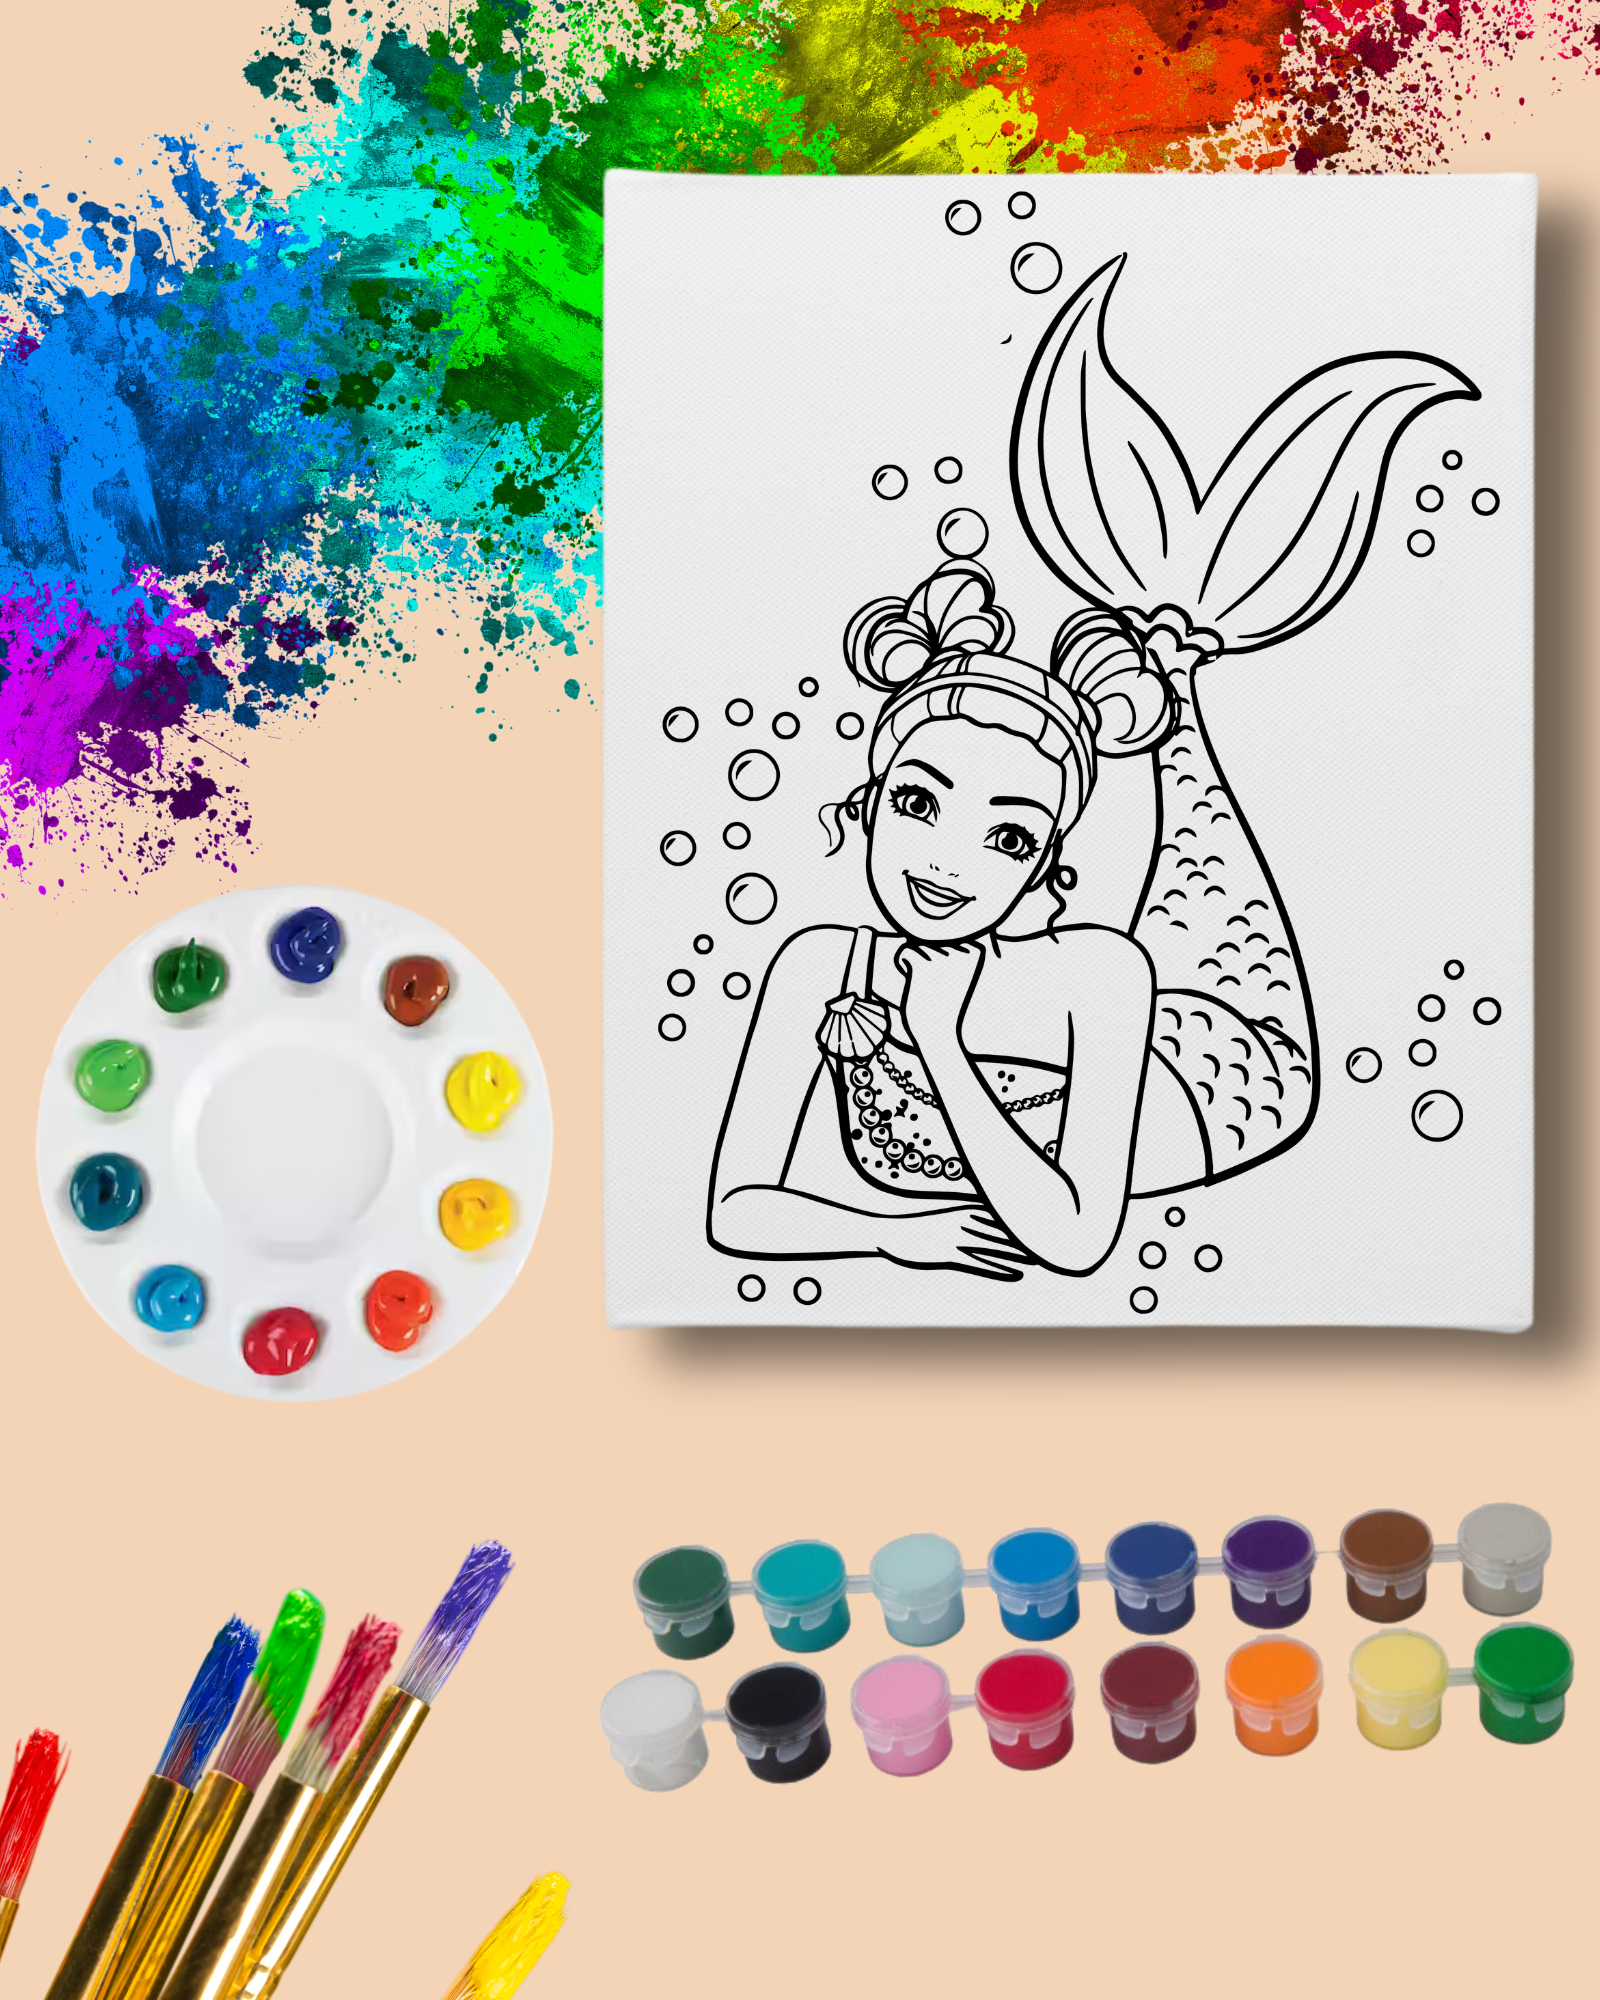 DIY Paint Party Kit - 11x14 Canvas - Mermaid Paint